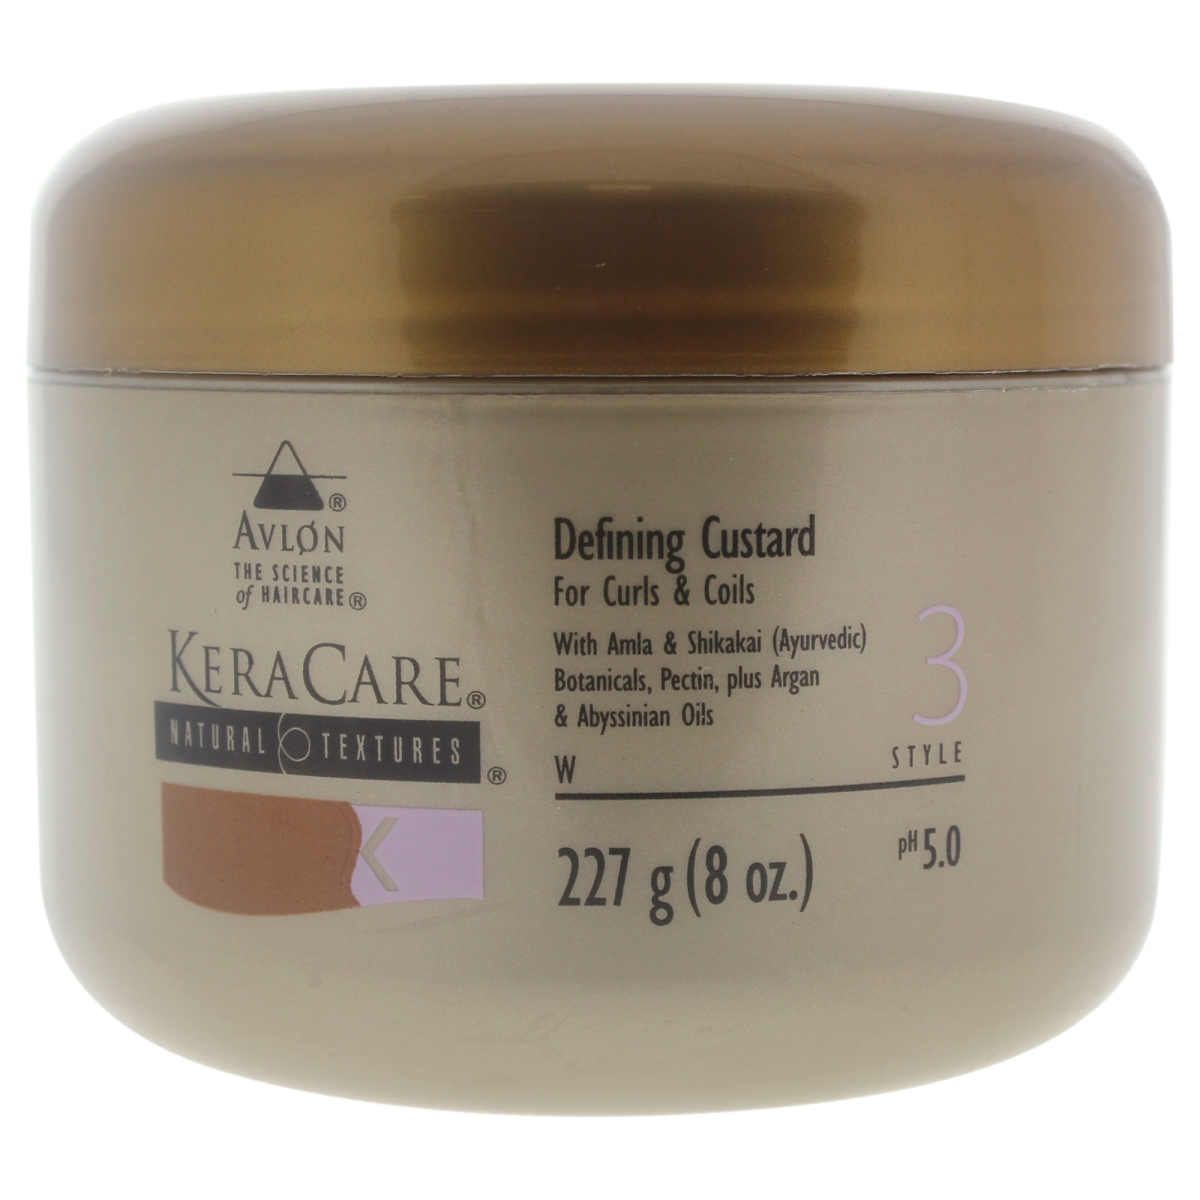 Picture of Avlon U-HC-11687 8 oz Cream - Natural Textures Defining Custard